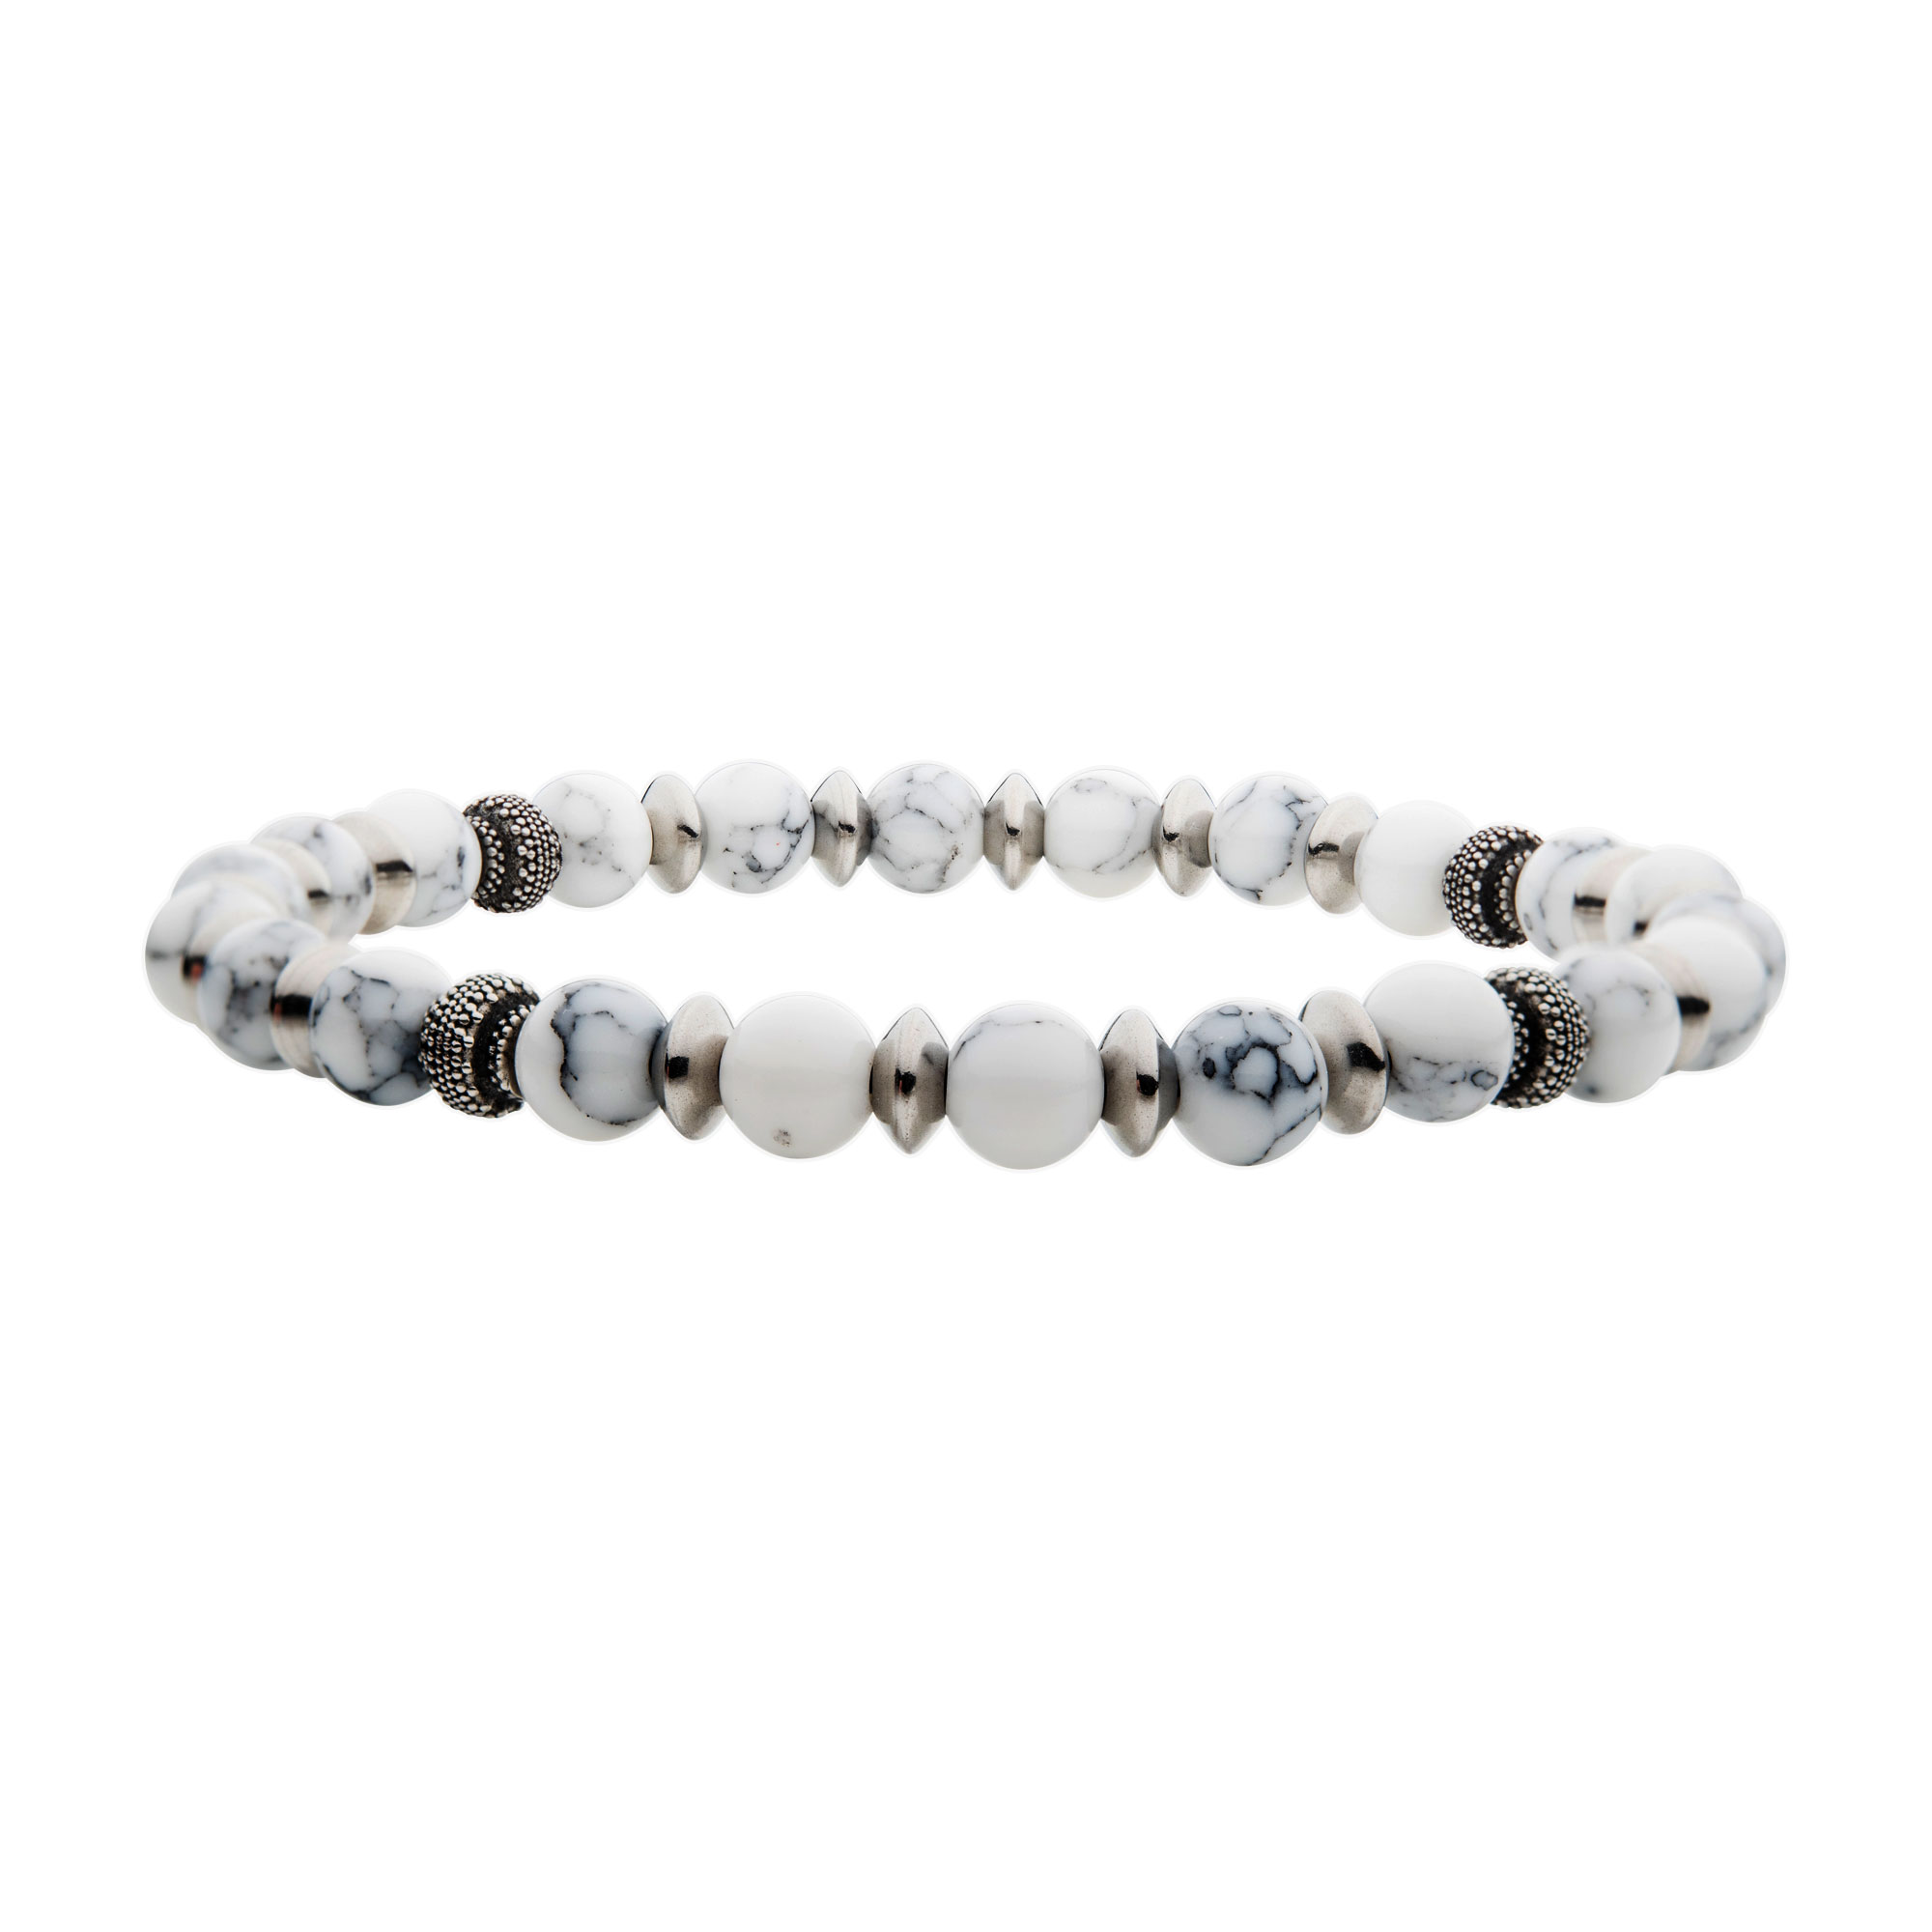 White Howlite Stones with Black Oxidized Beads Bracelet Glatz Jewelry Aliquippa, PA